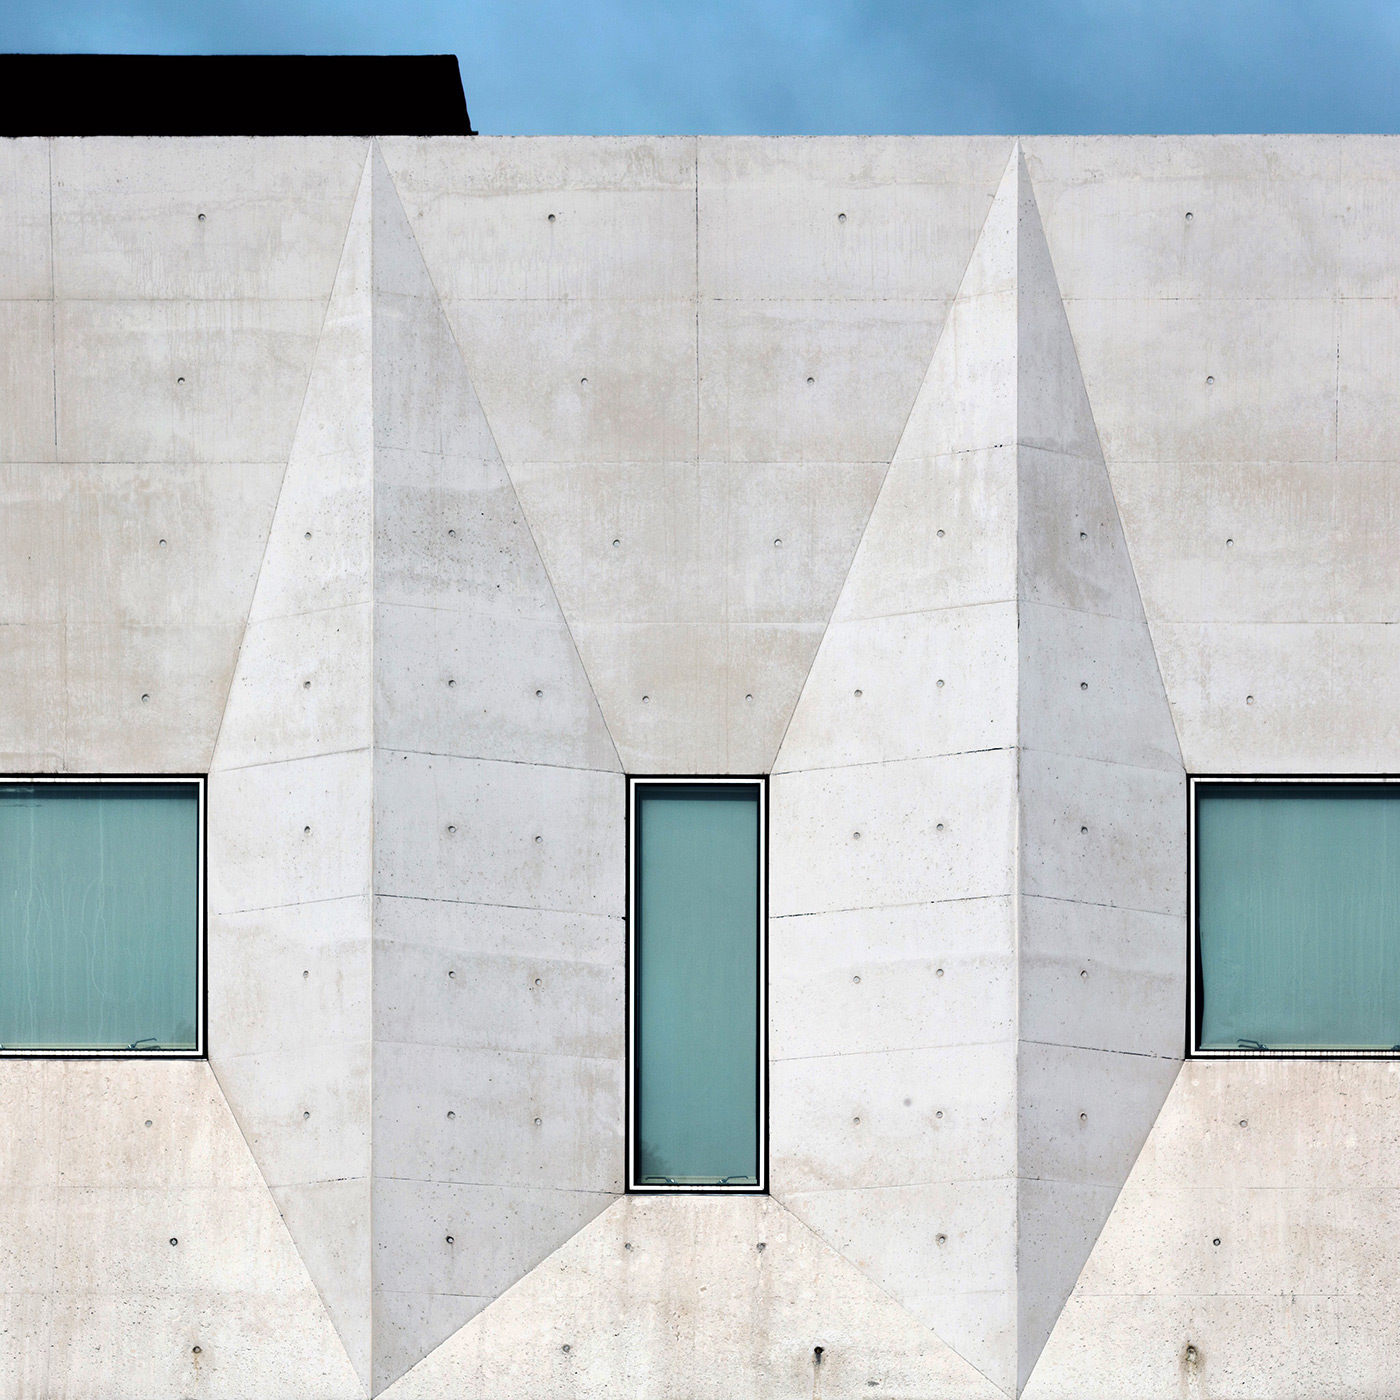 modern architecture contemporary architecture city building design inspire geometric Urban architect concrete